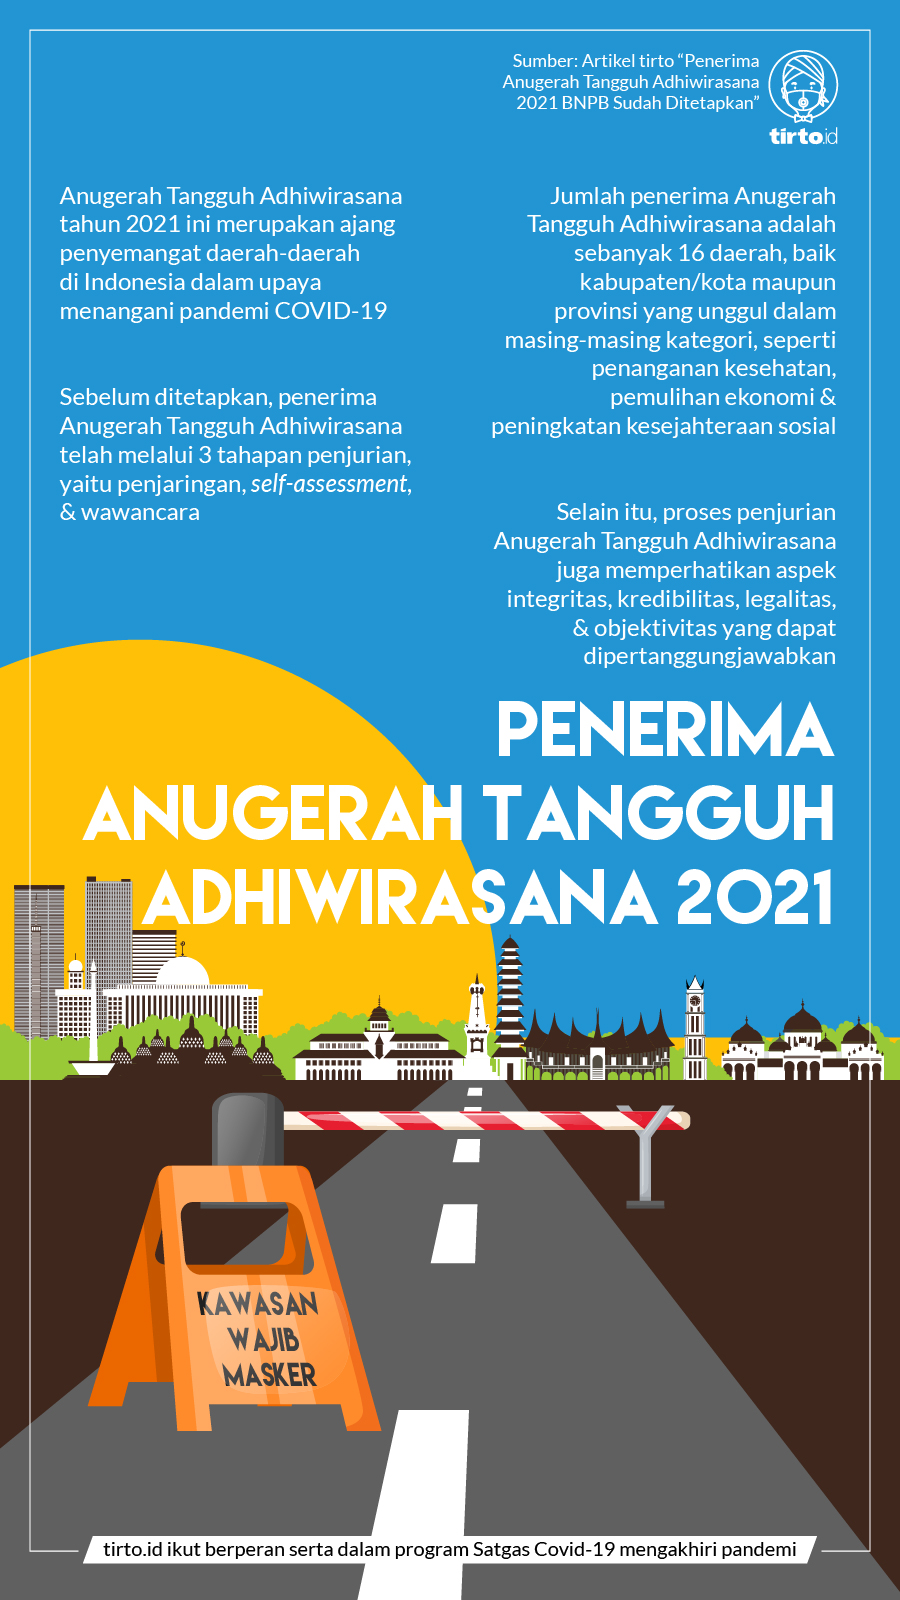 Infografik BNPB Penerima Anugerah Tangguh Adhiwirasana 2021 1 Nov